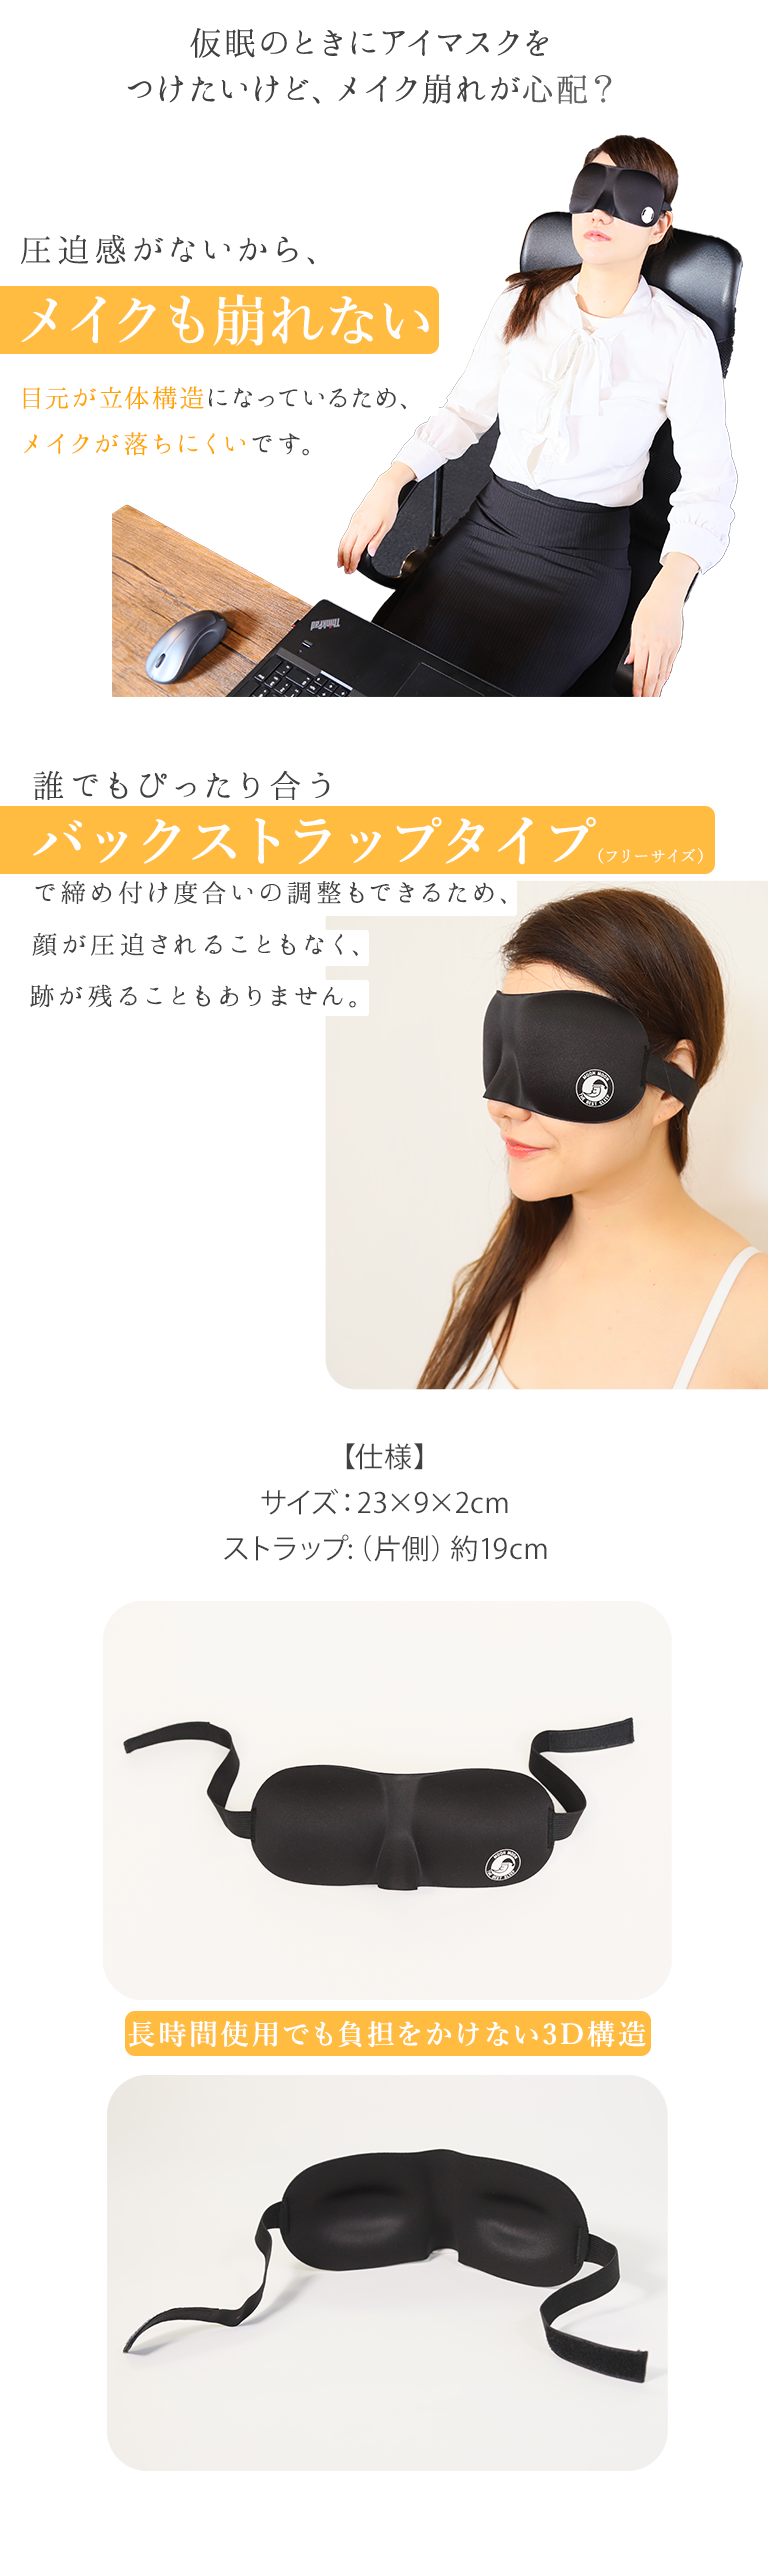 3Dアイマスク EyeNight(アイナイト) - ムーンムーン公式通販